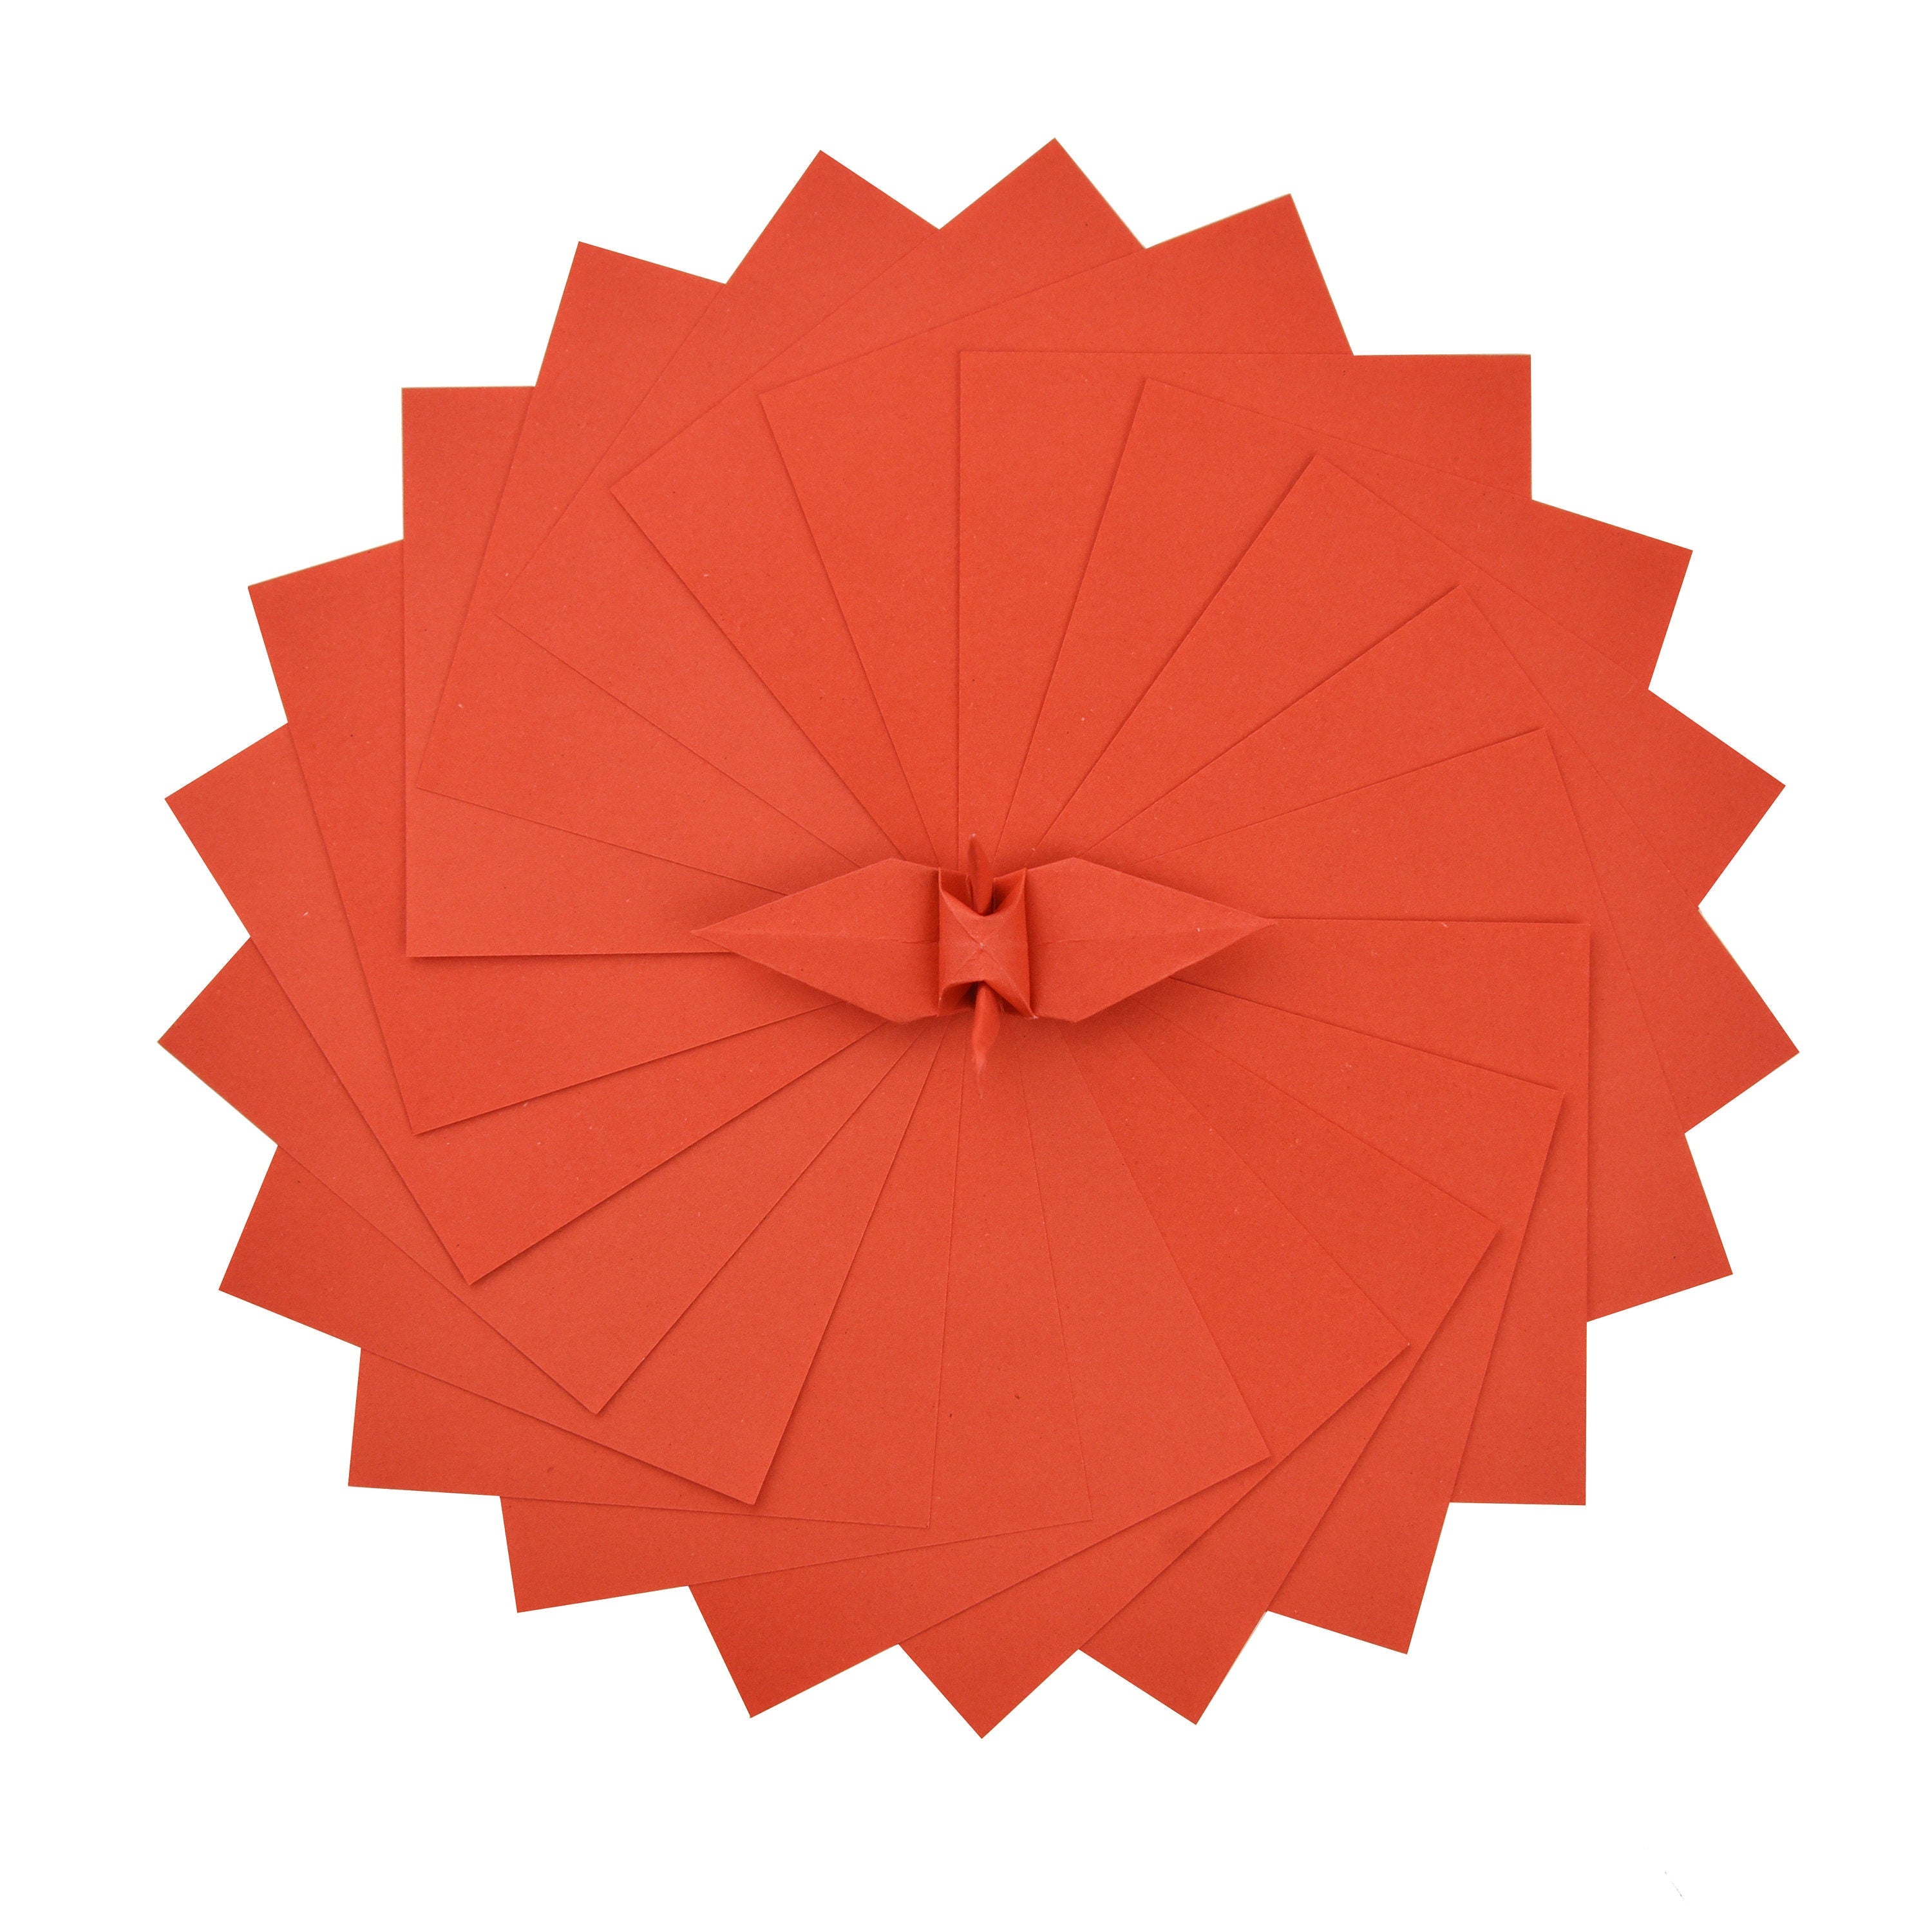 100 Hojas de Papel Origami - 6x6 pulgadas - Paquete de Papel Cuadrado para Plegar, Grullas de Origami y Decoración - S04